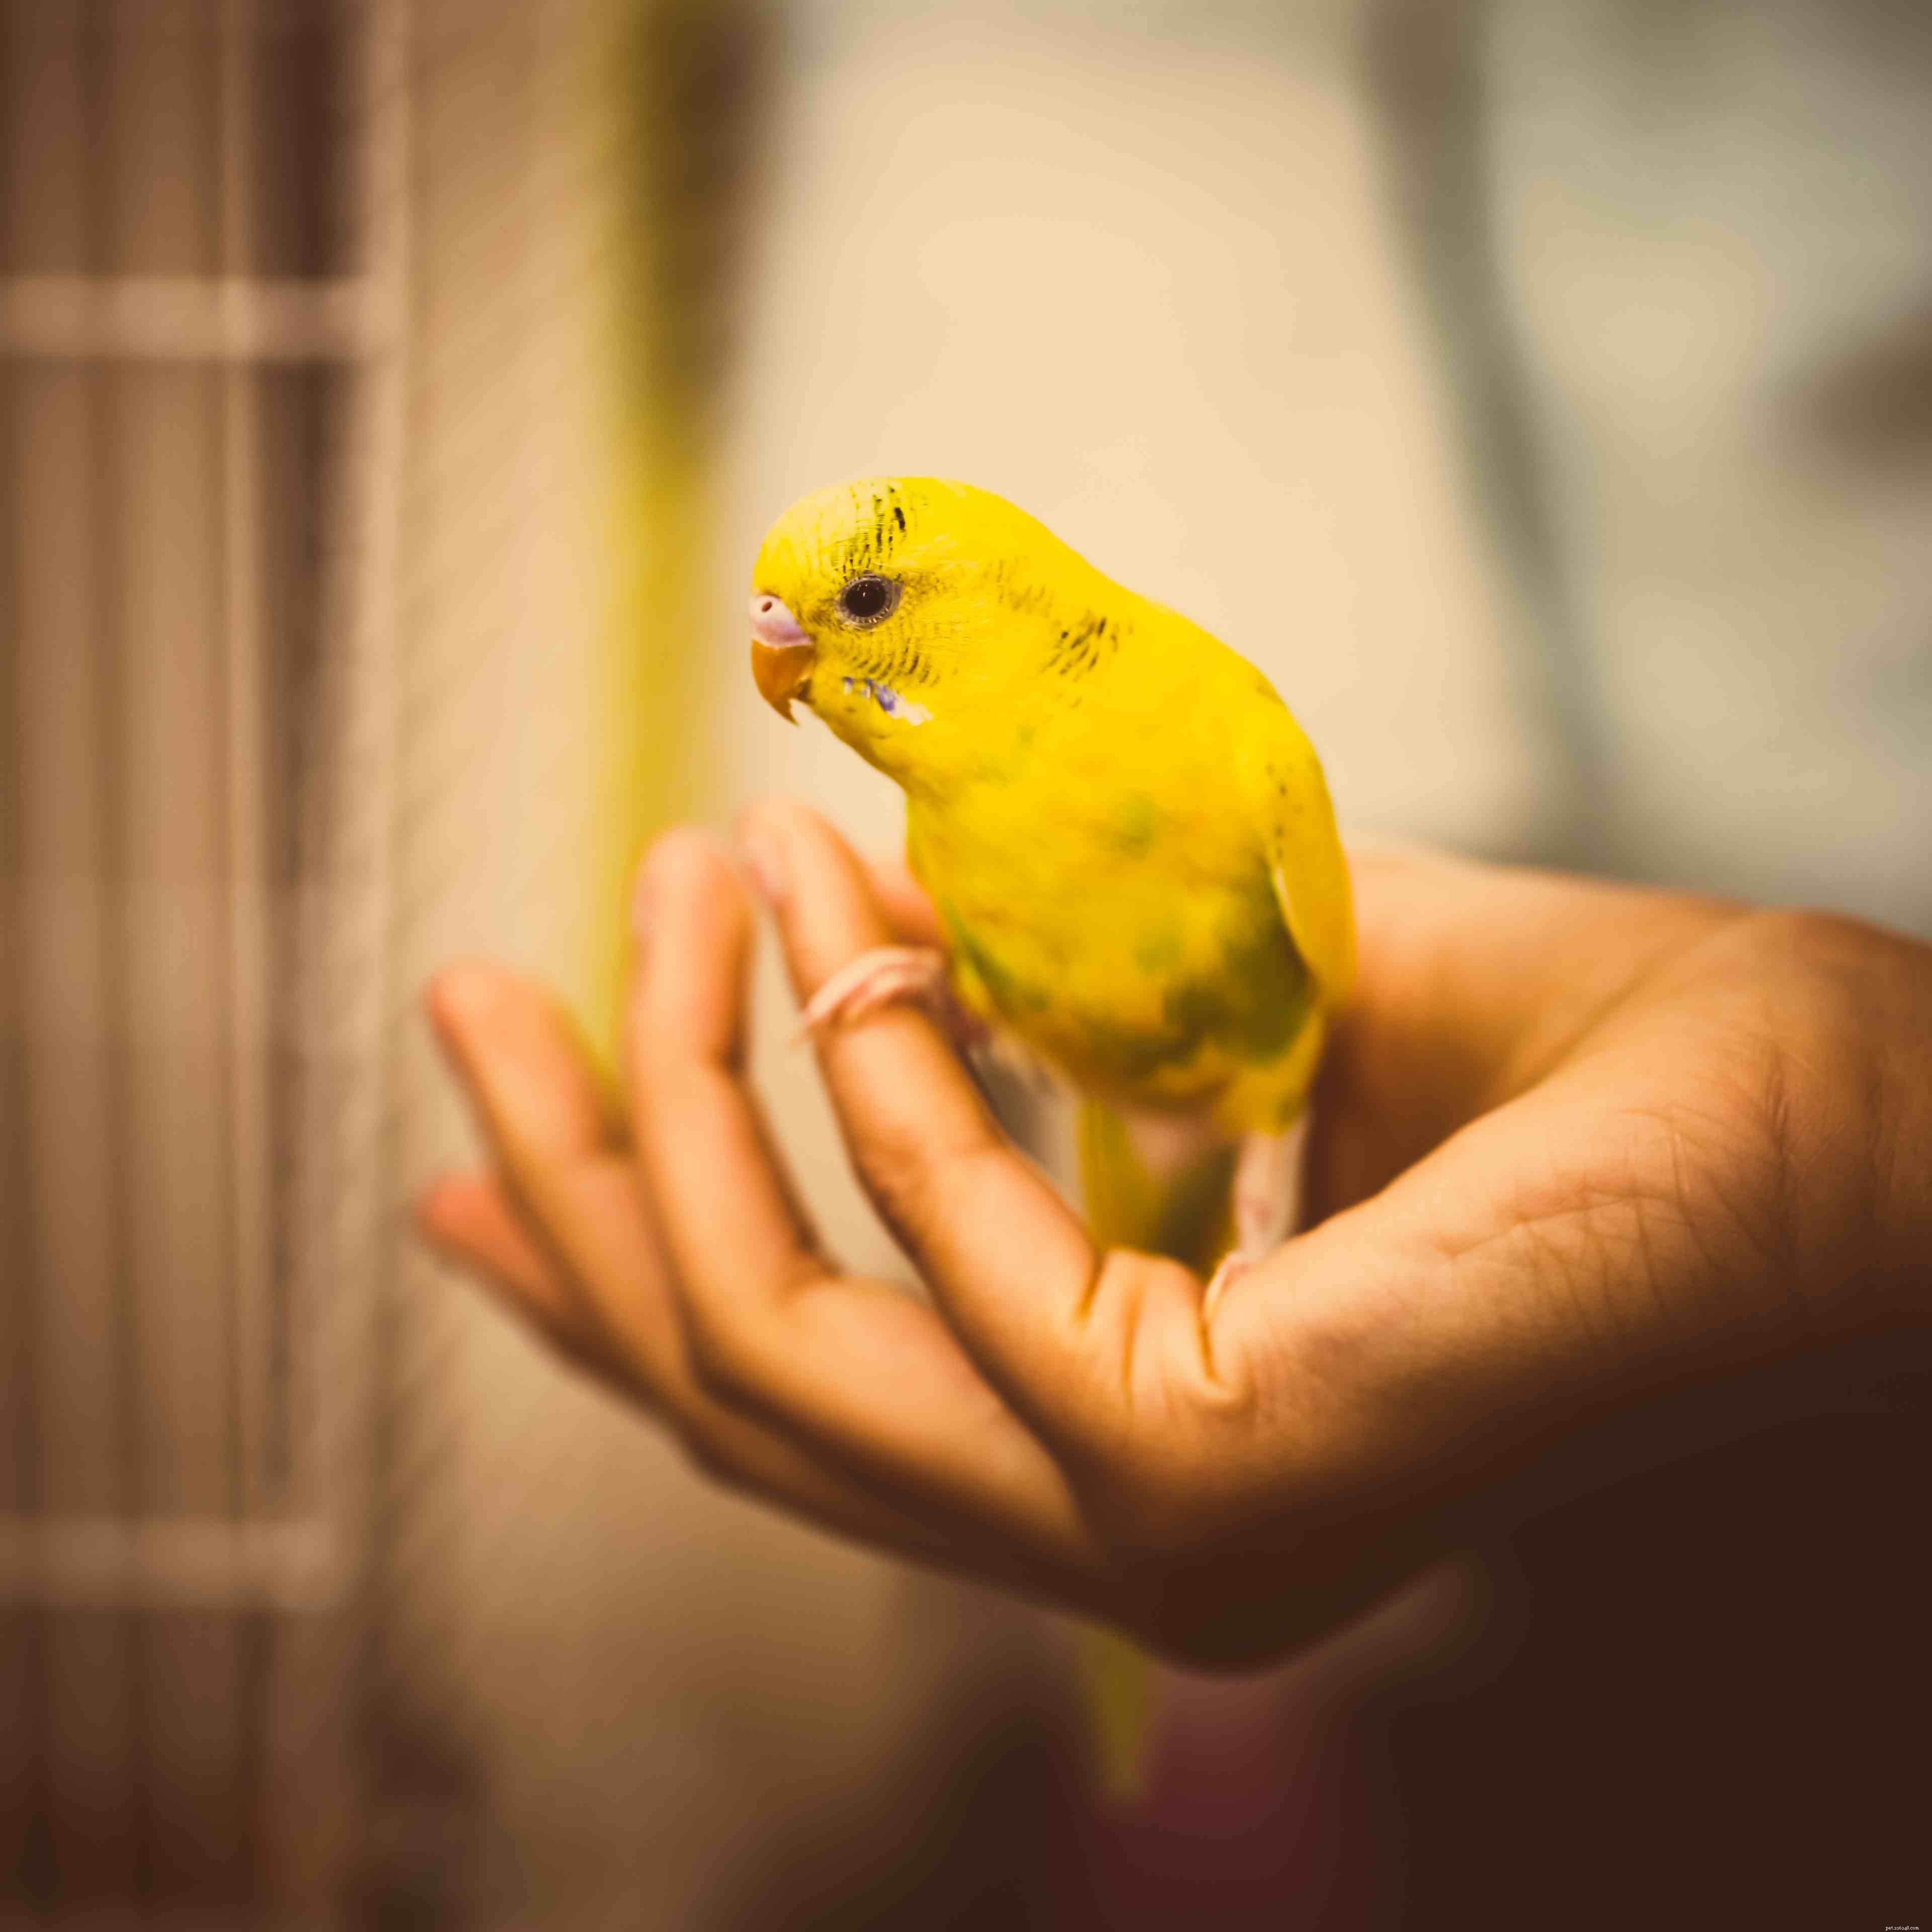 Gli 8 migliori pappagalli gialli da tenere come animali domestici